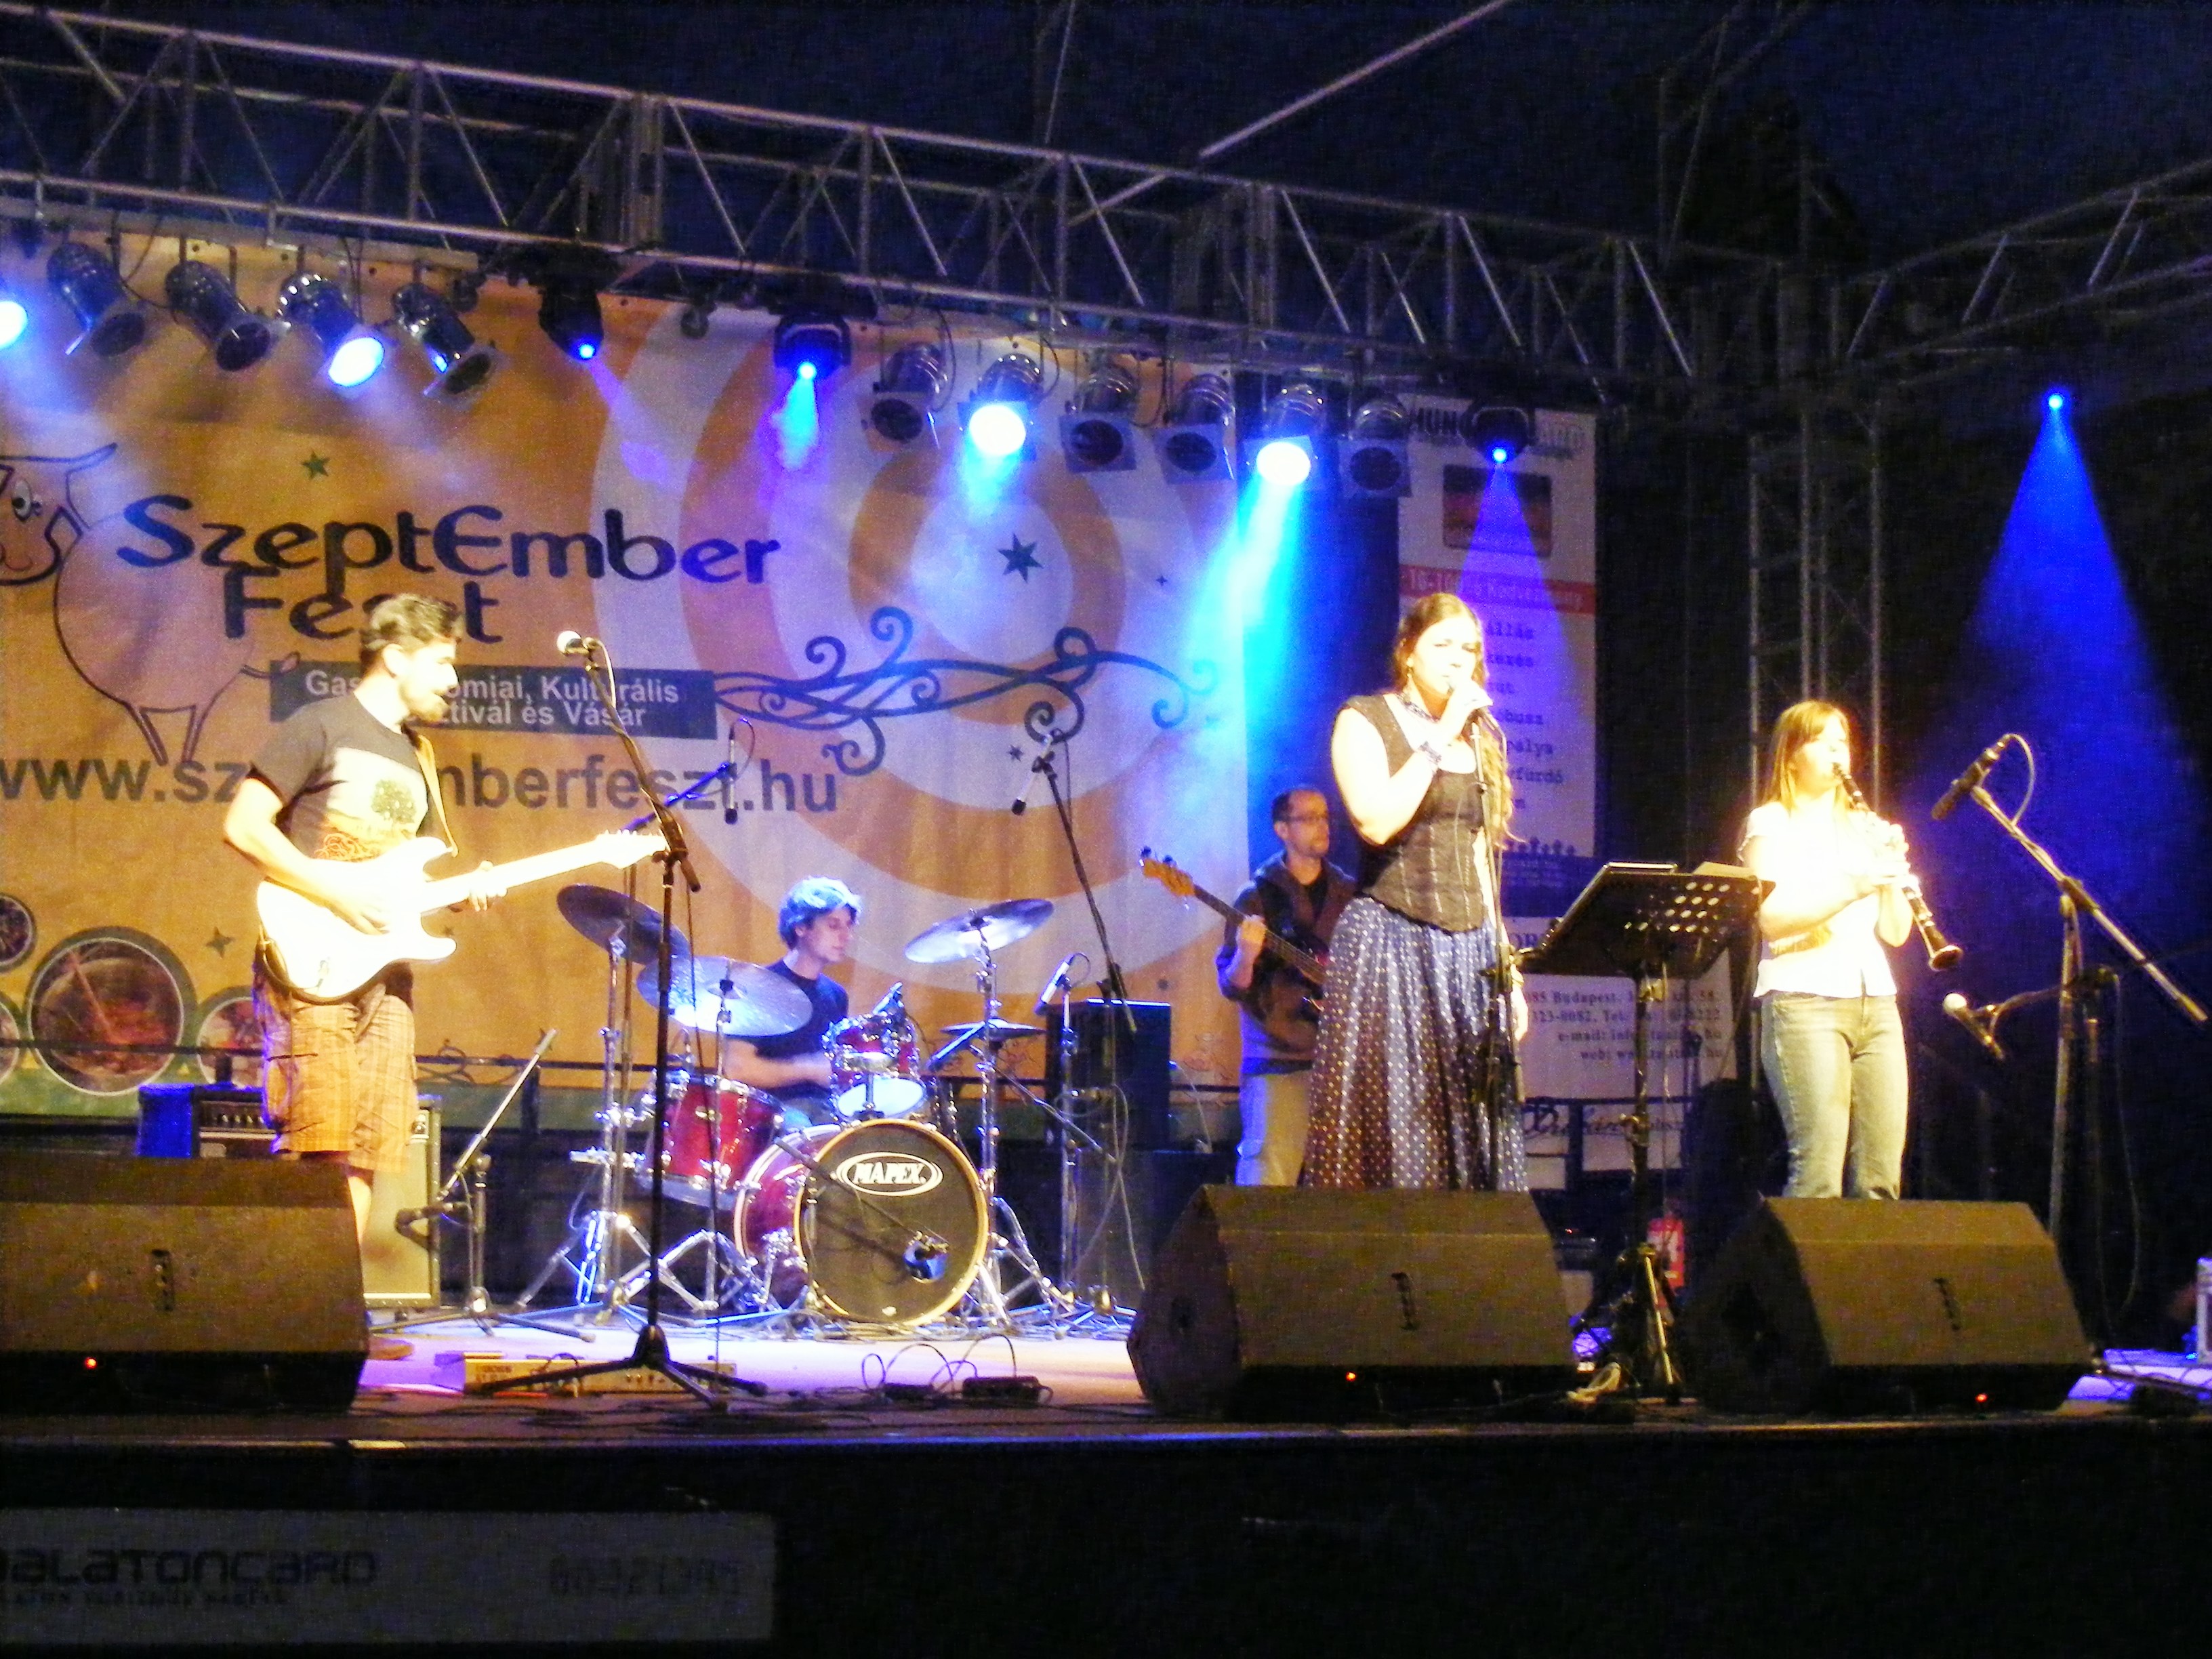 Zefír plays at the Szeptemberfeszt stage